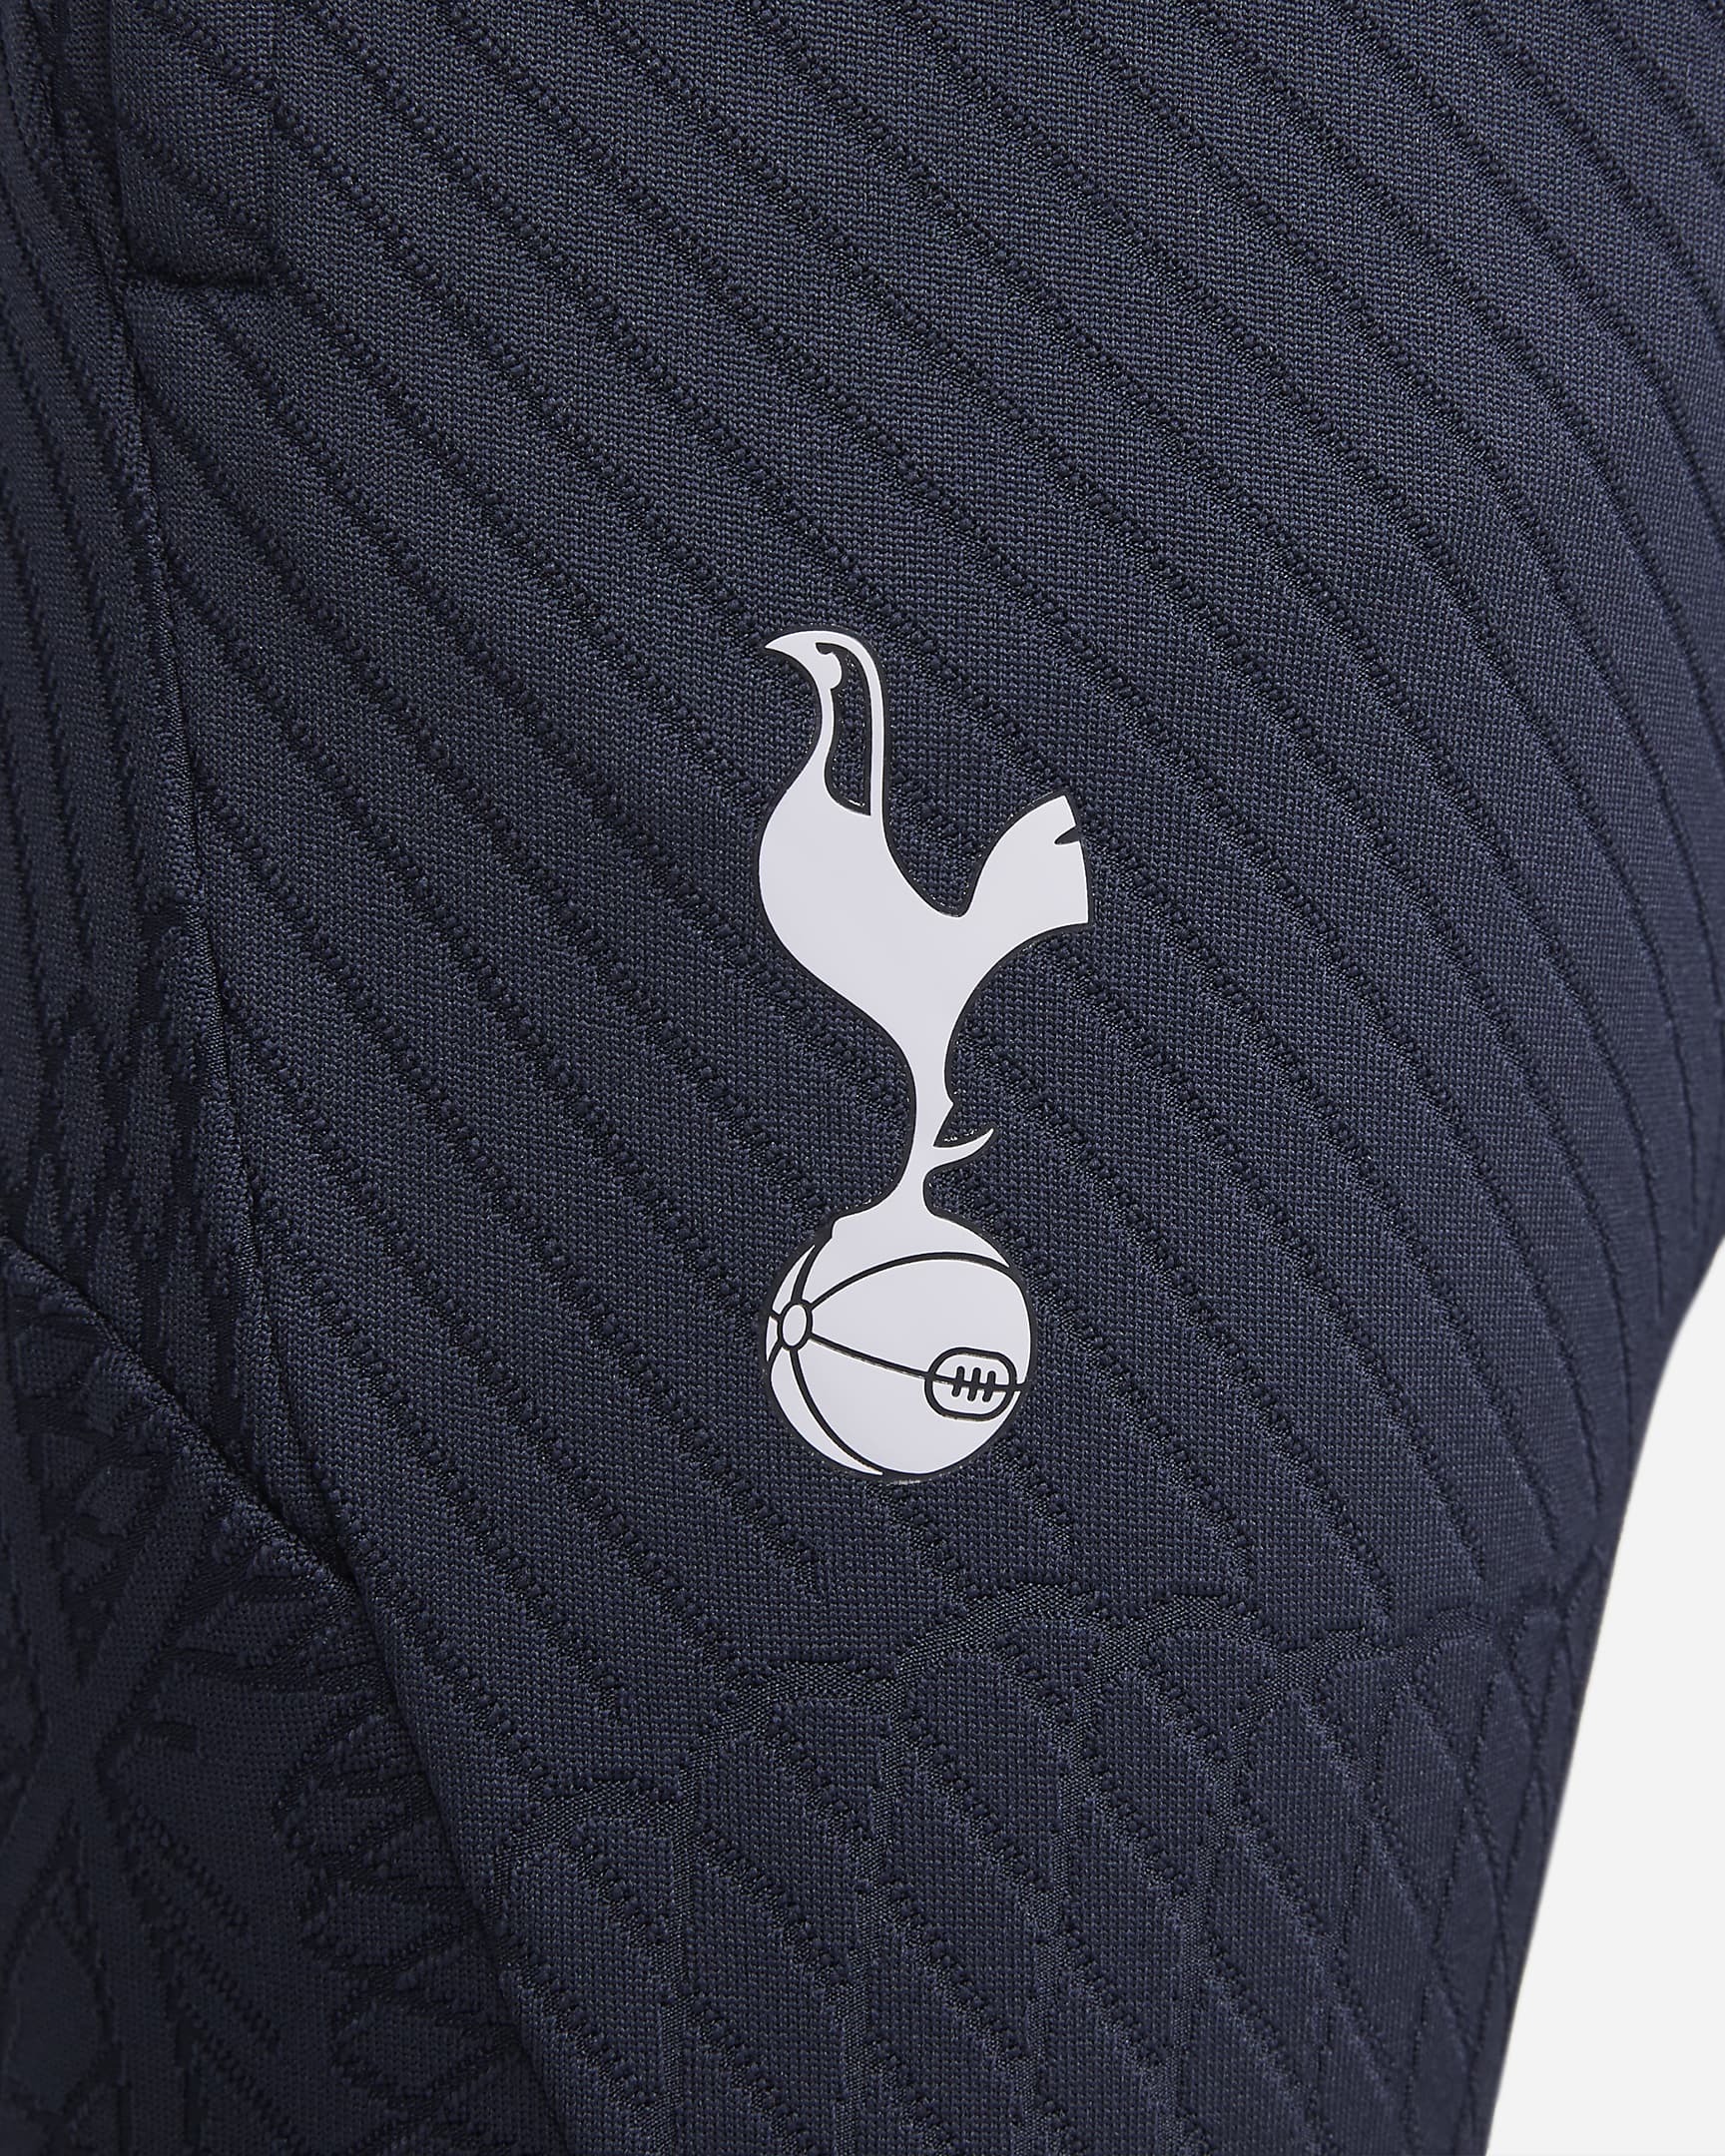 Tottenham Hotspur Strike Elite Men's Nike Dri-FIT ADV Knit Football ...